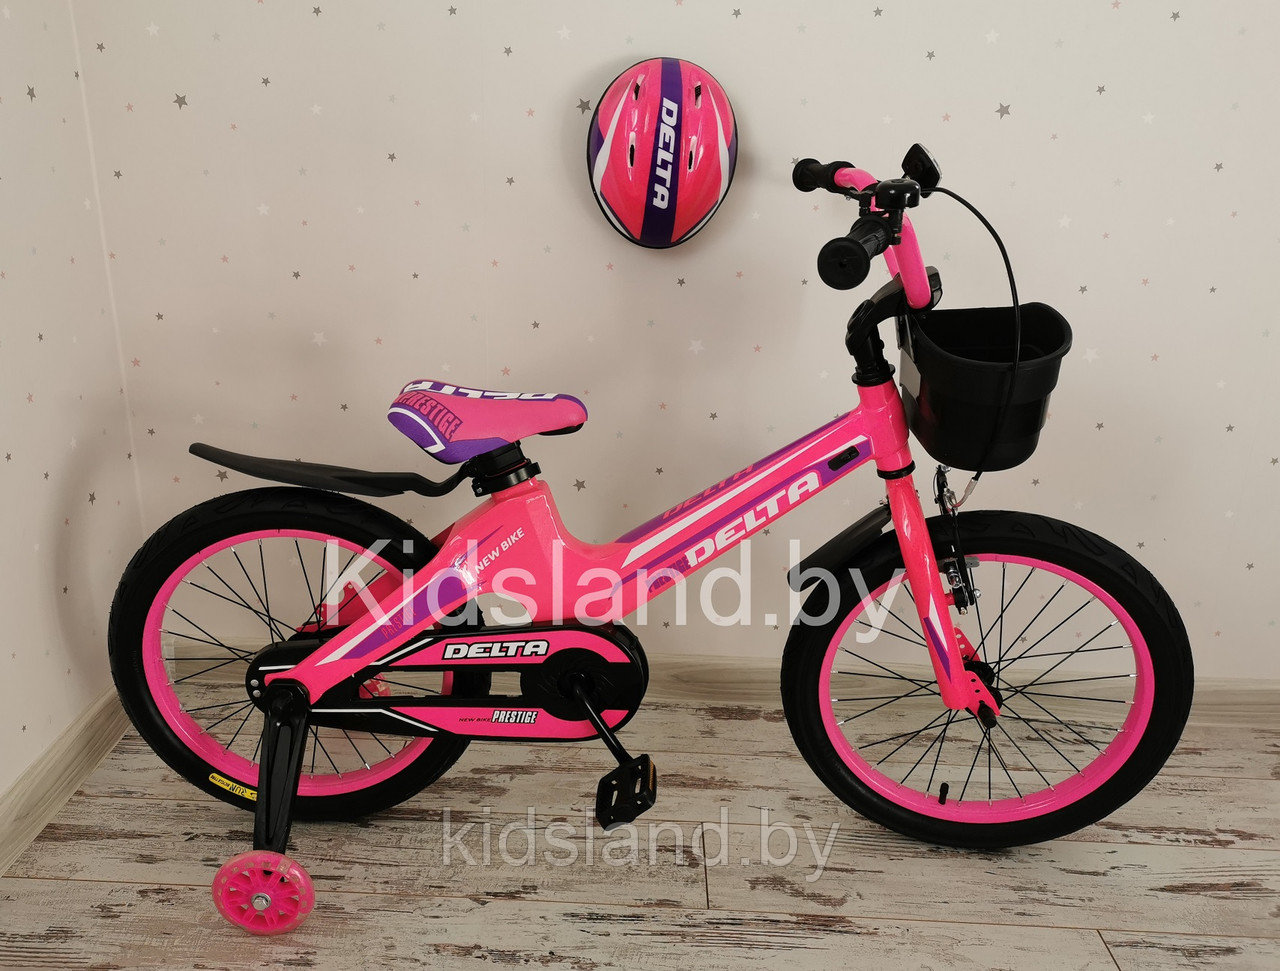 Детский облегченный велосипед Delta Prestige S 16'' + шлем (розовый), фото 1